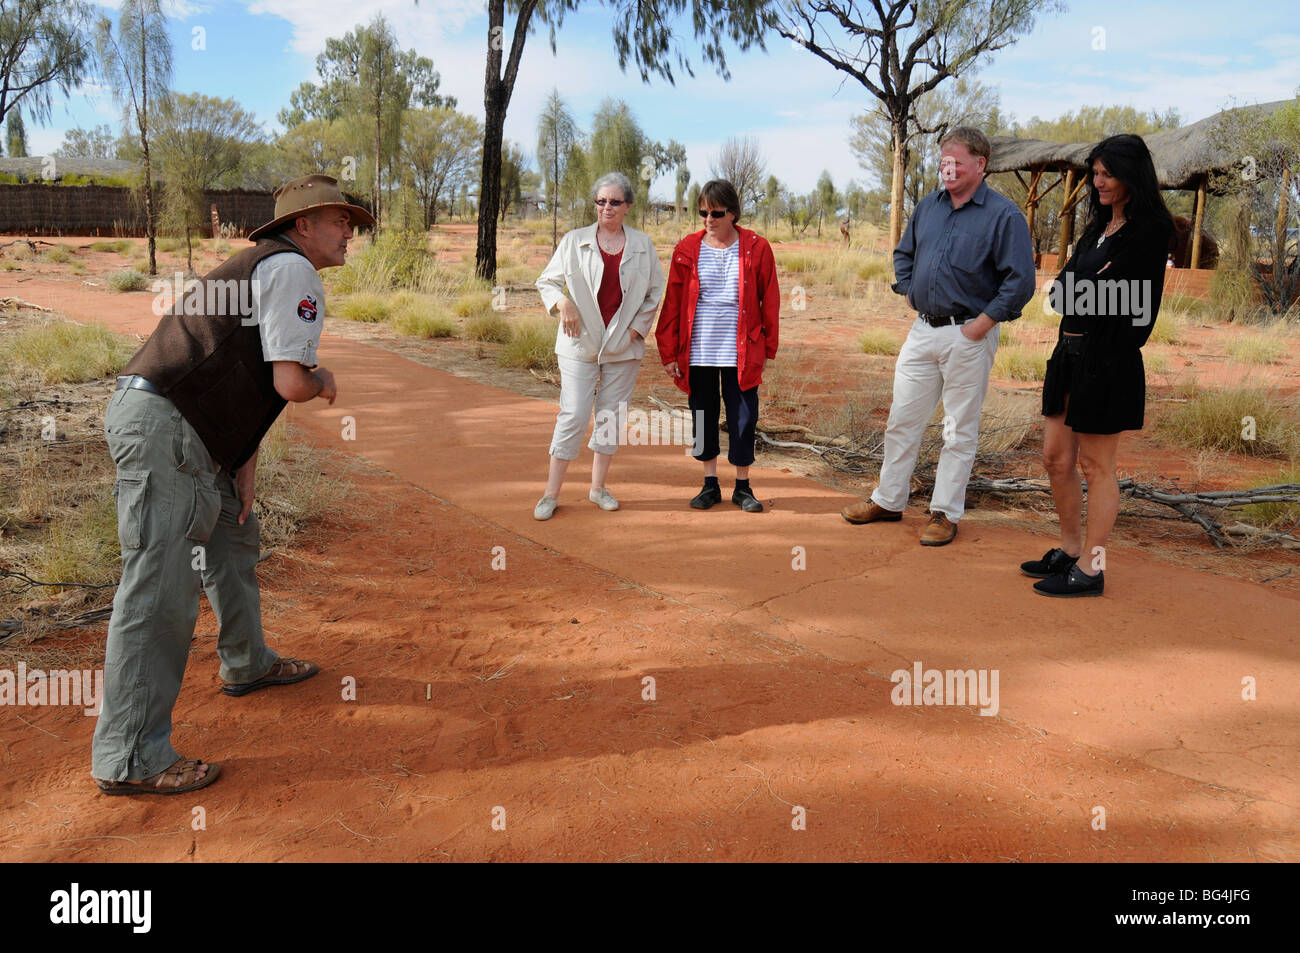 Un gardien explique la méthode de suivi des animaux sur les Autochtones à une partie des visiteurs à Uluru - Kata Tjuta National Park, Australie. Banque D'Images